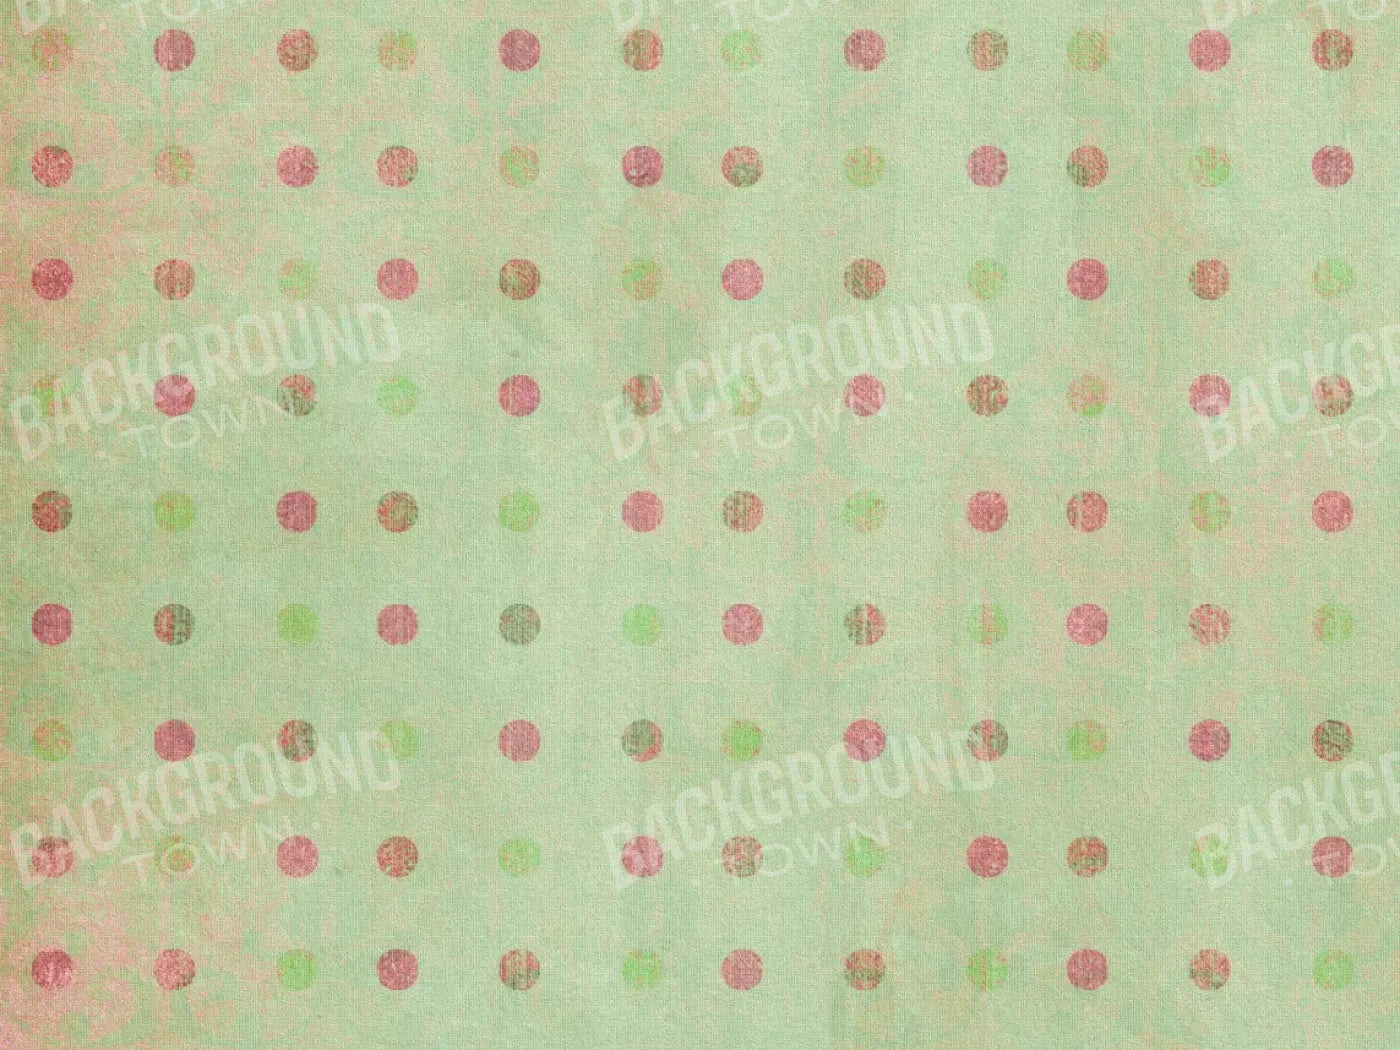 Minnie 10’X8’ Fleece (120 X 96 Inch) Backdrop